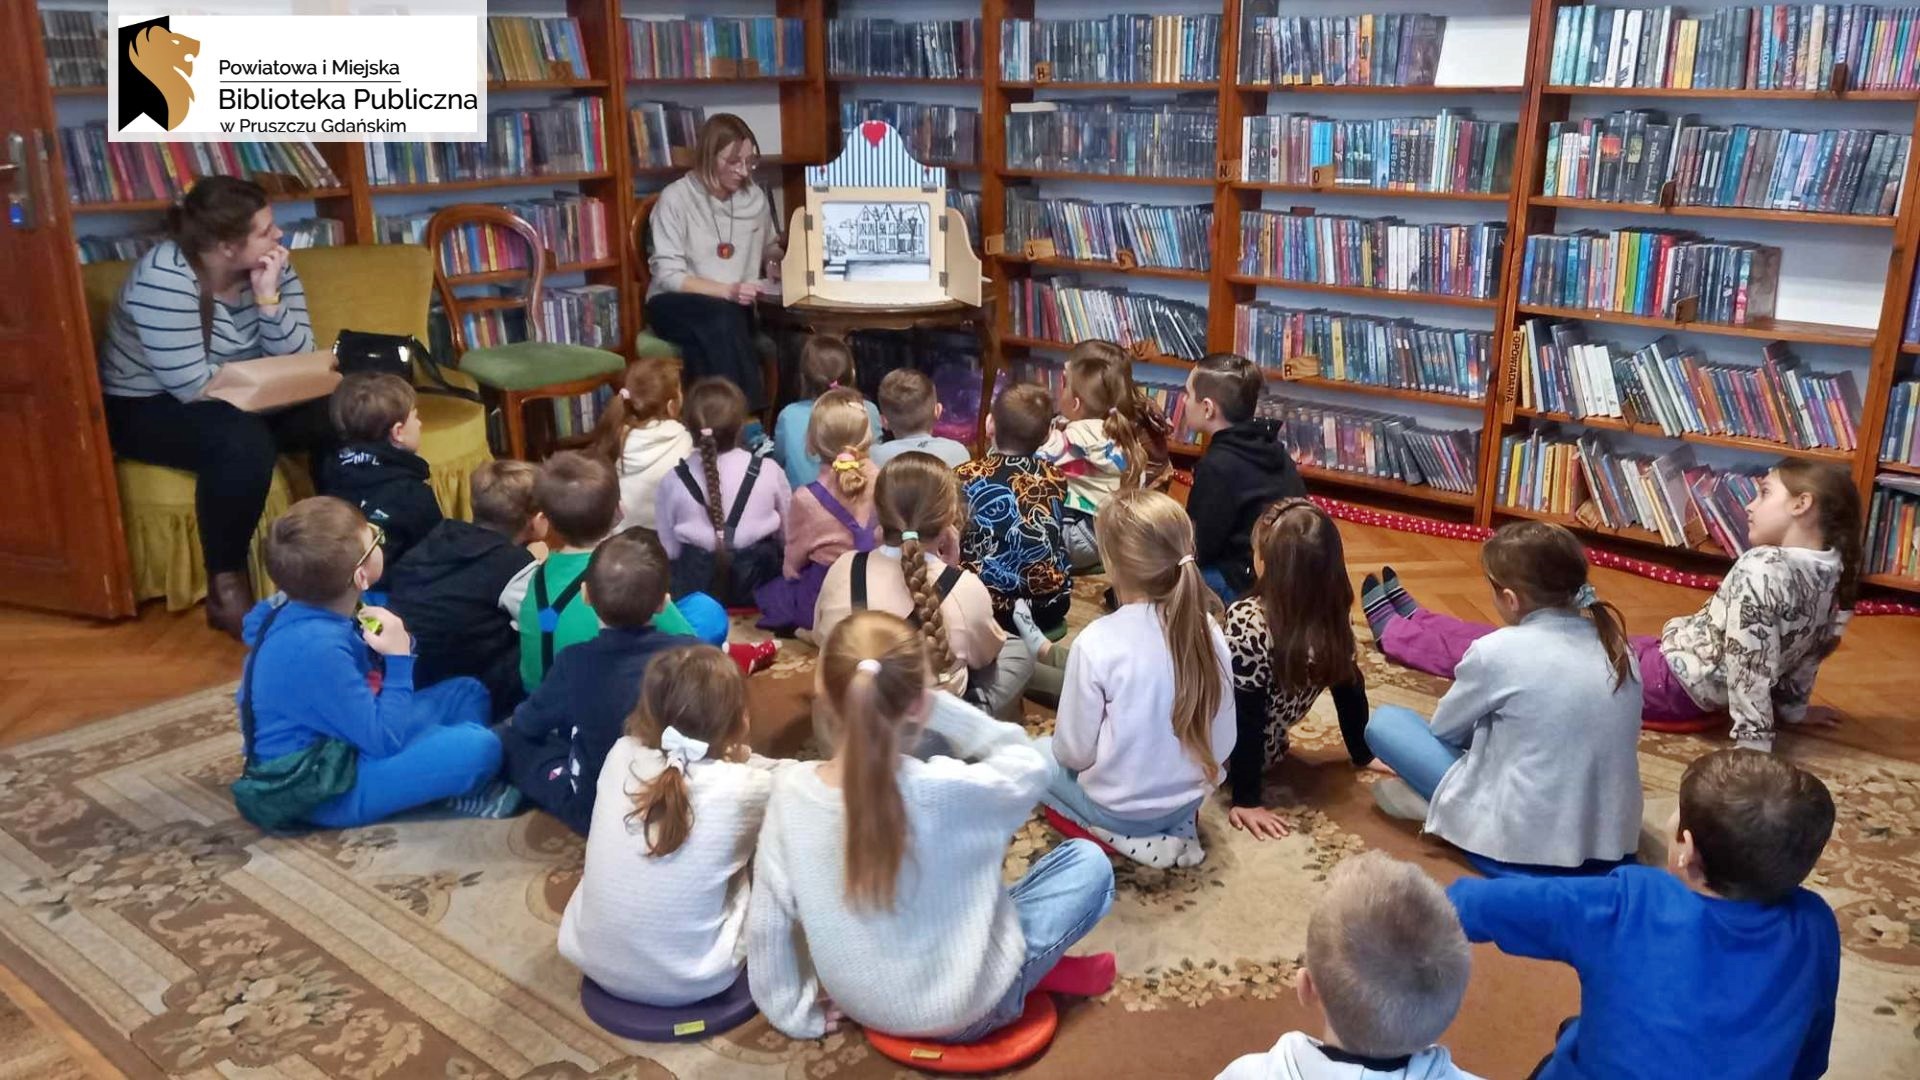 Dzieci siedzą na podłodze i patrzą w kierunku bibliotekarki, która mówi i wykonuje gest dłonią. Po lewej, na stoliku, stoi teatrzyk kamishibai, w środku znajduje się ilustracja. W tle regały z książkami.